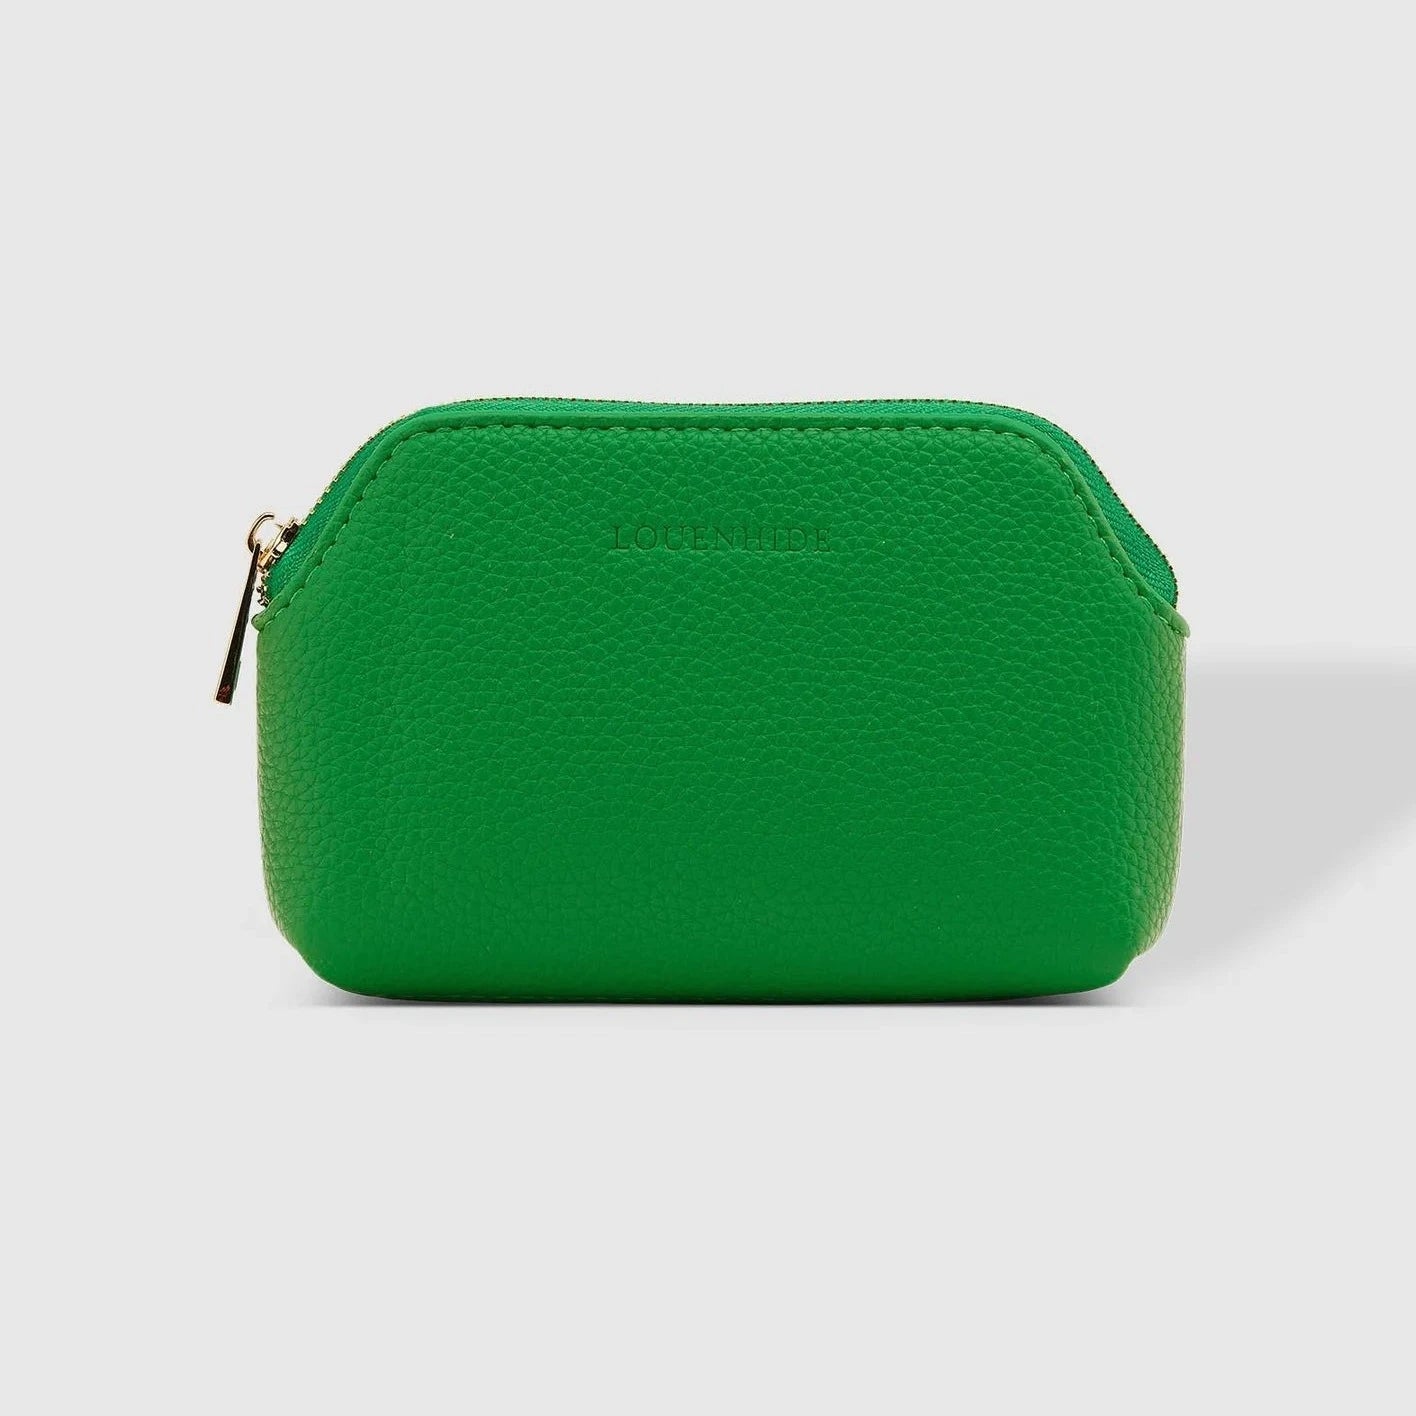 Ruby purse green